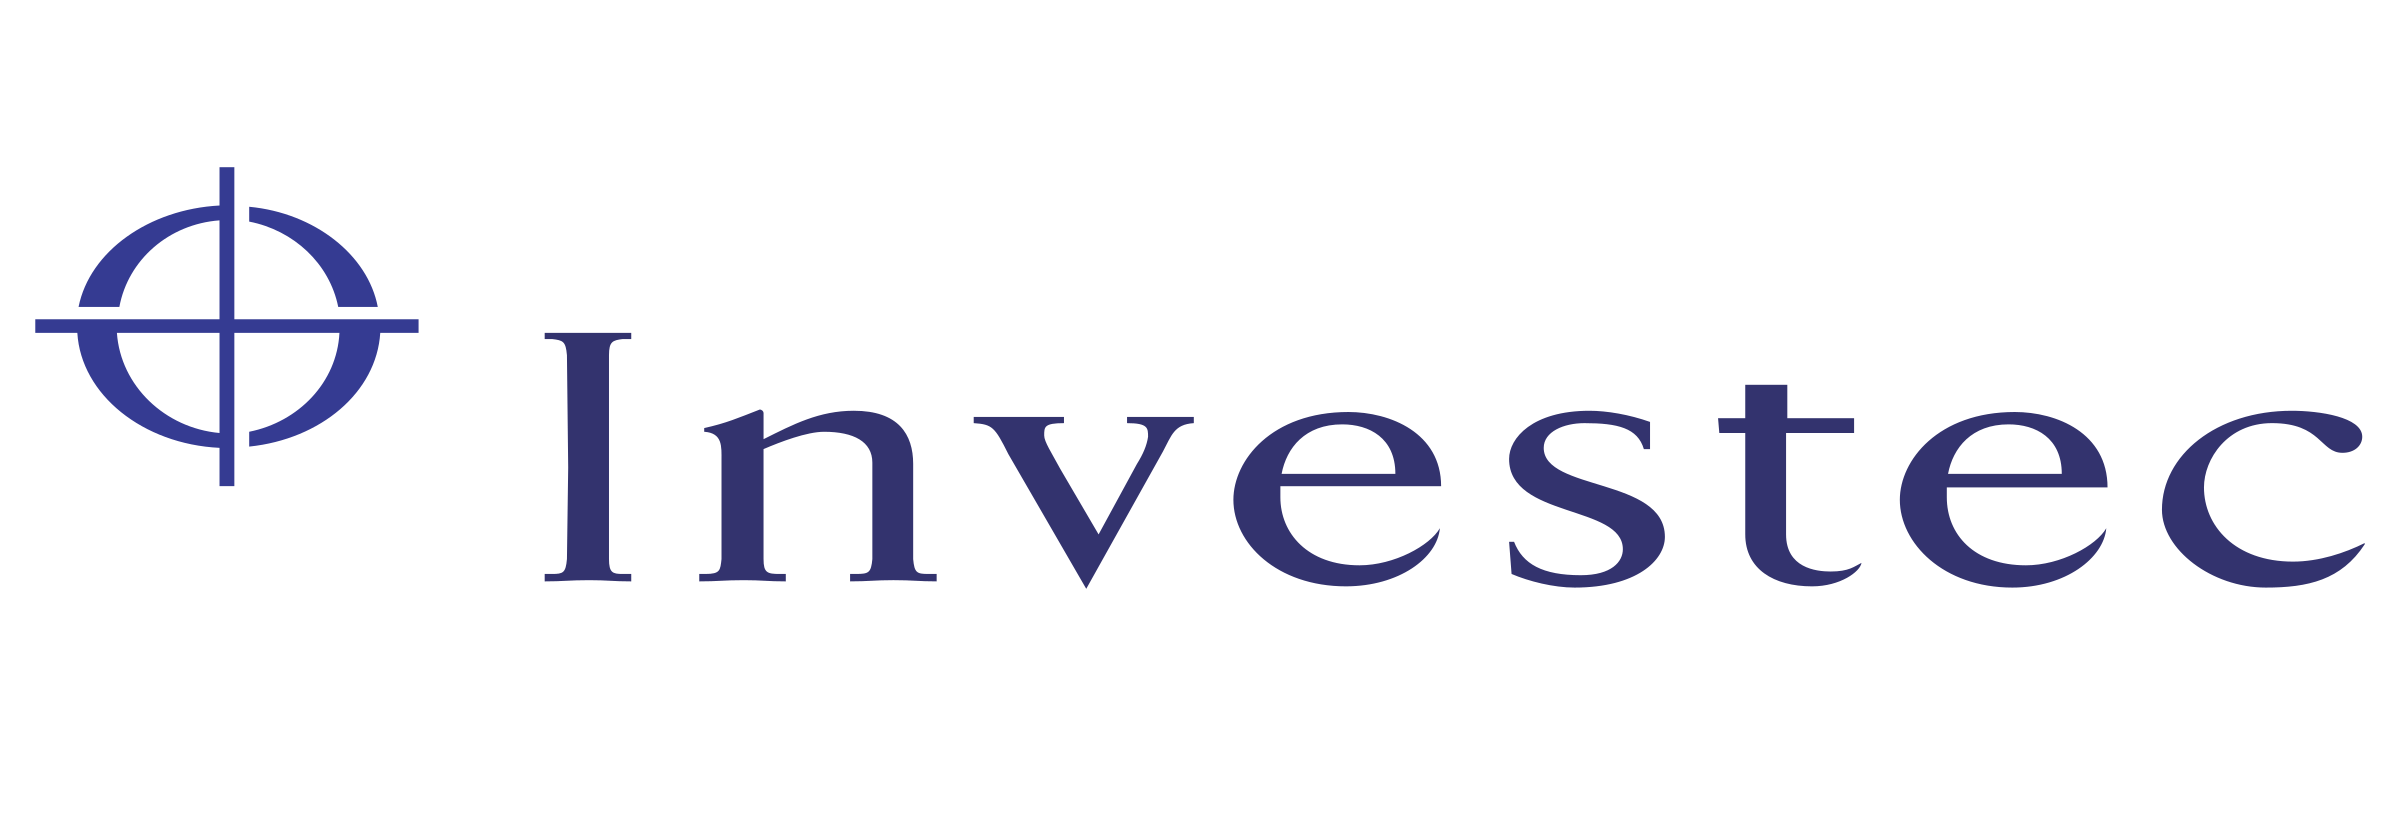 investec-logo-png-transparent-e1570194241897